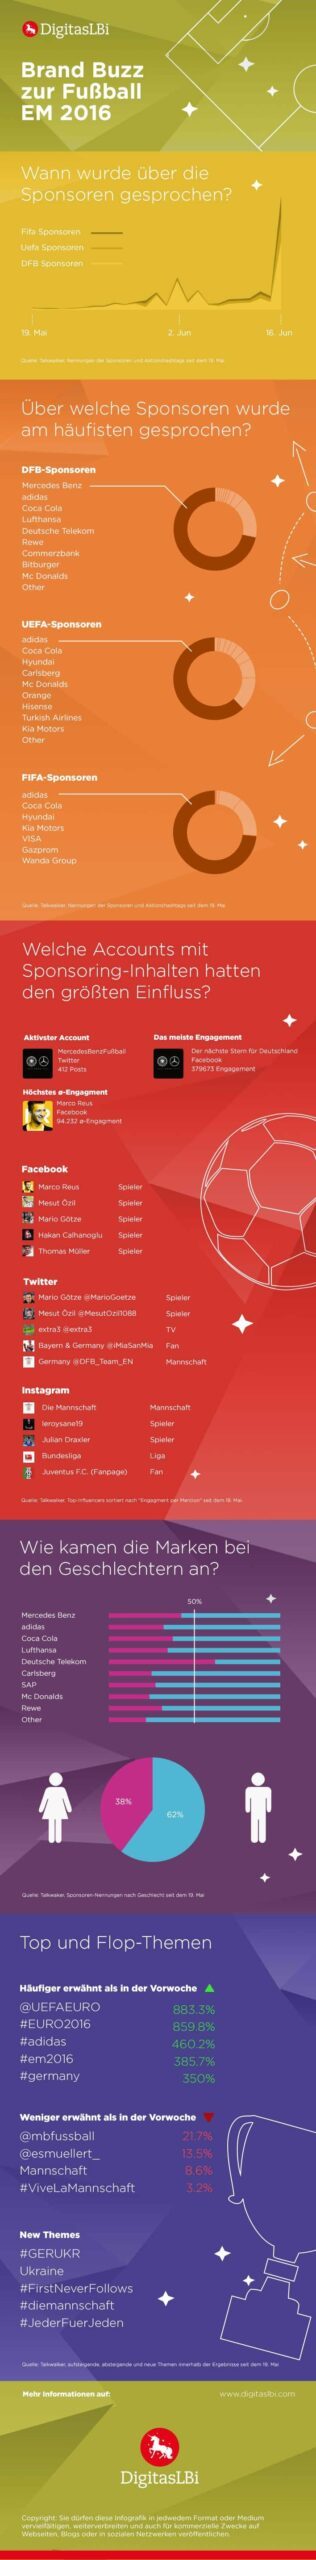 Infografik - Brand Buzz zur Fussball EM 2016